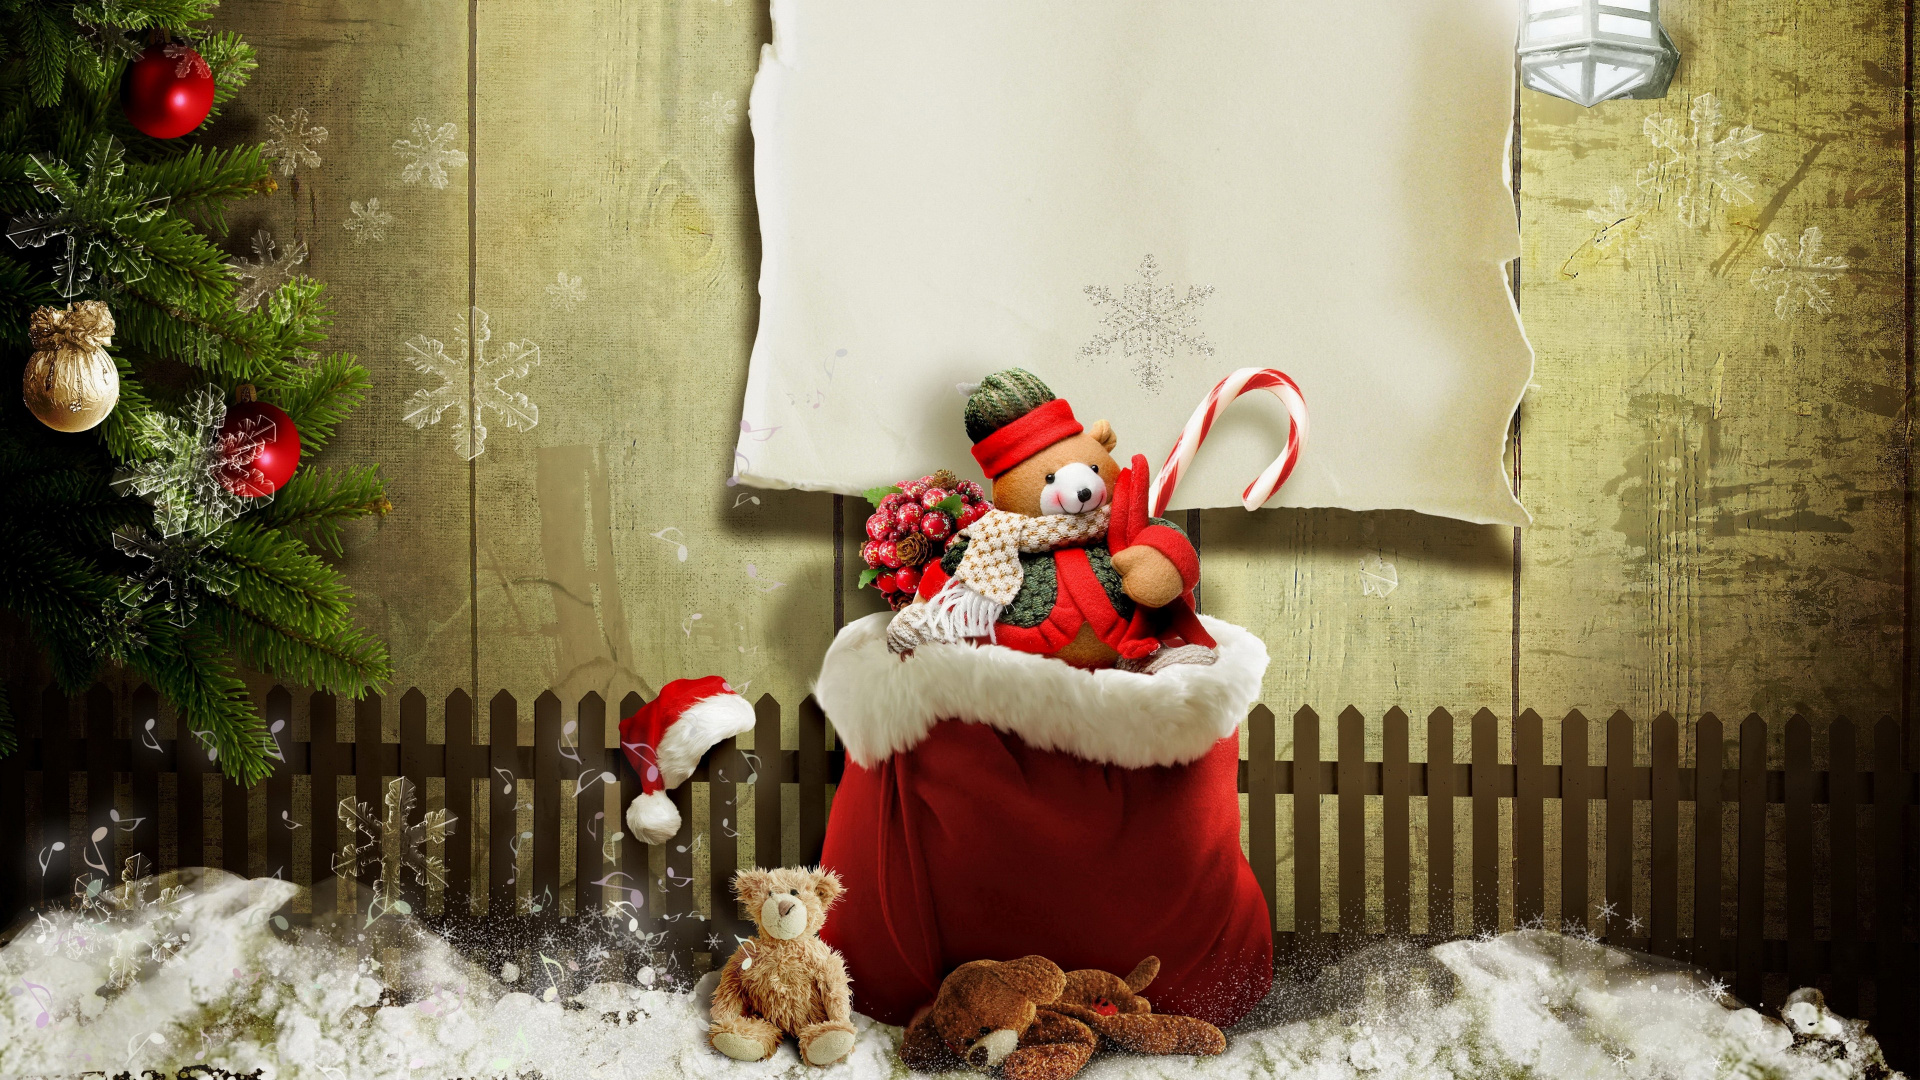 El Día De Navidad, Santa Claus, Regalo de Navidad, Navidad, Adorno de Navidad. Wallpaper in 1920x1080 Resolution